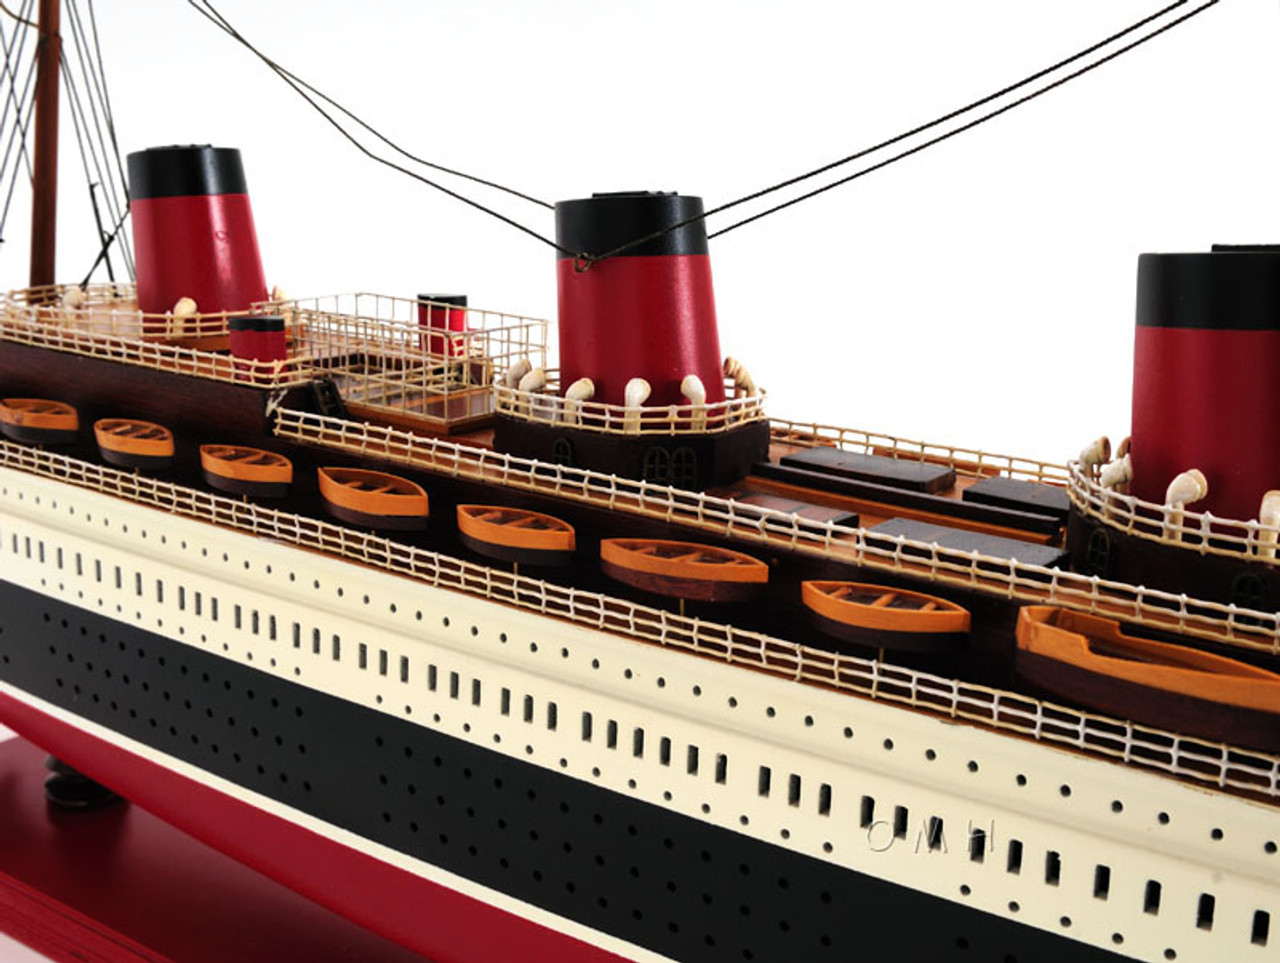 SS Normandie Ocean Liner Wood Cruise Ship Model